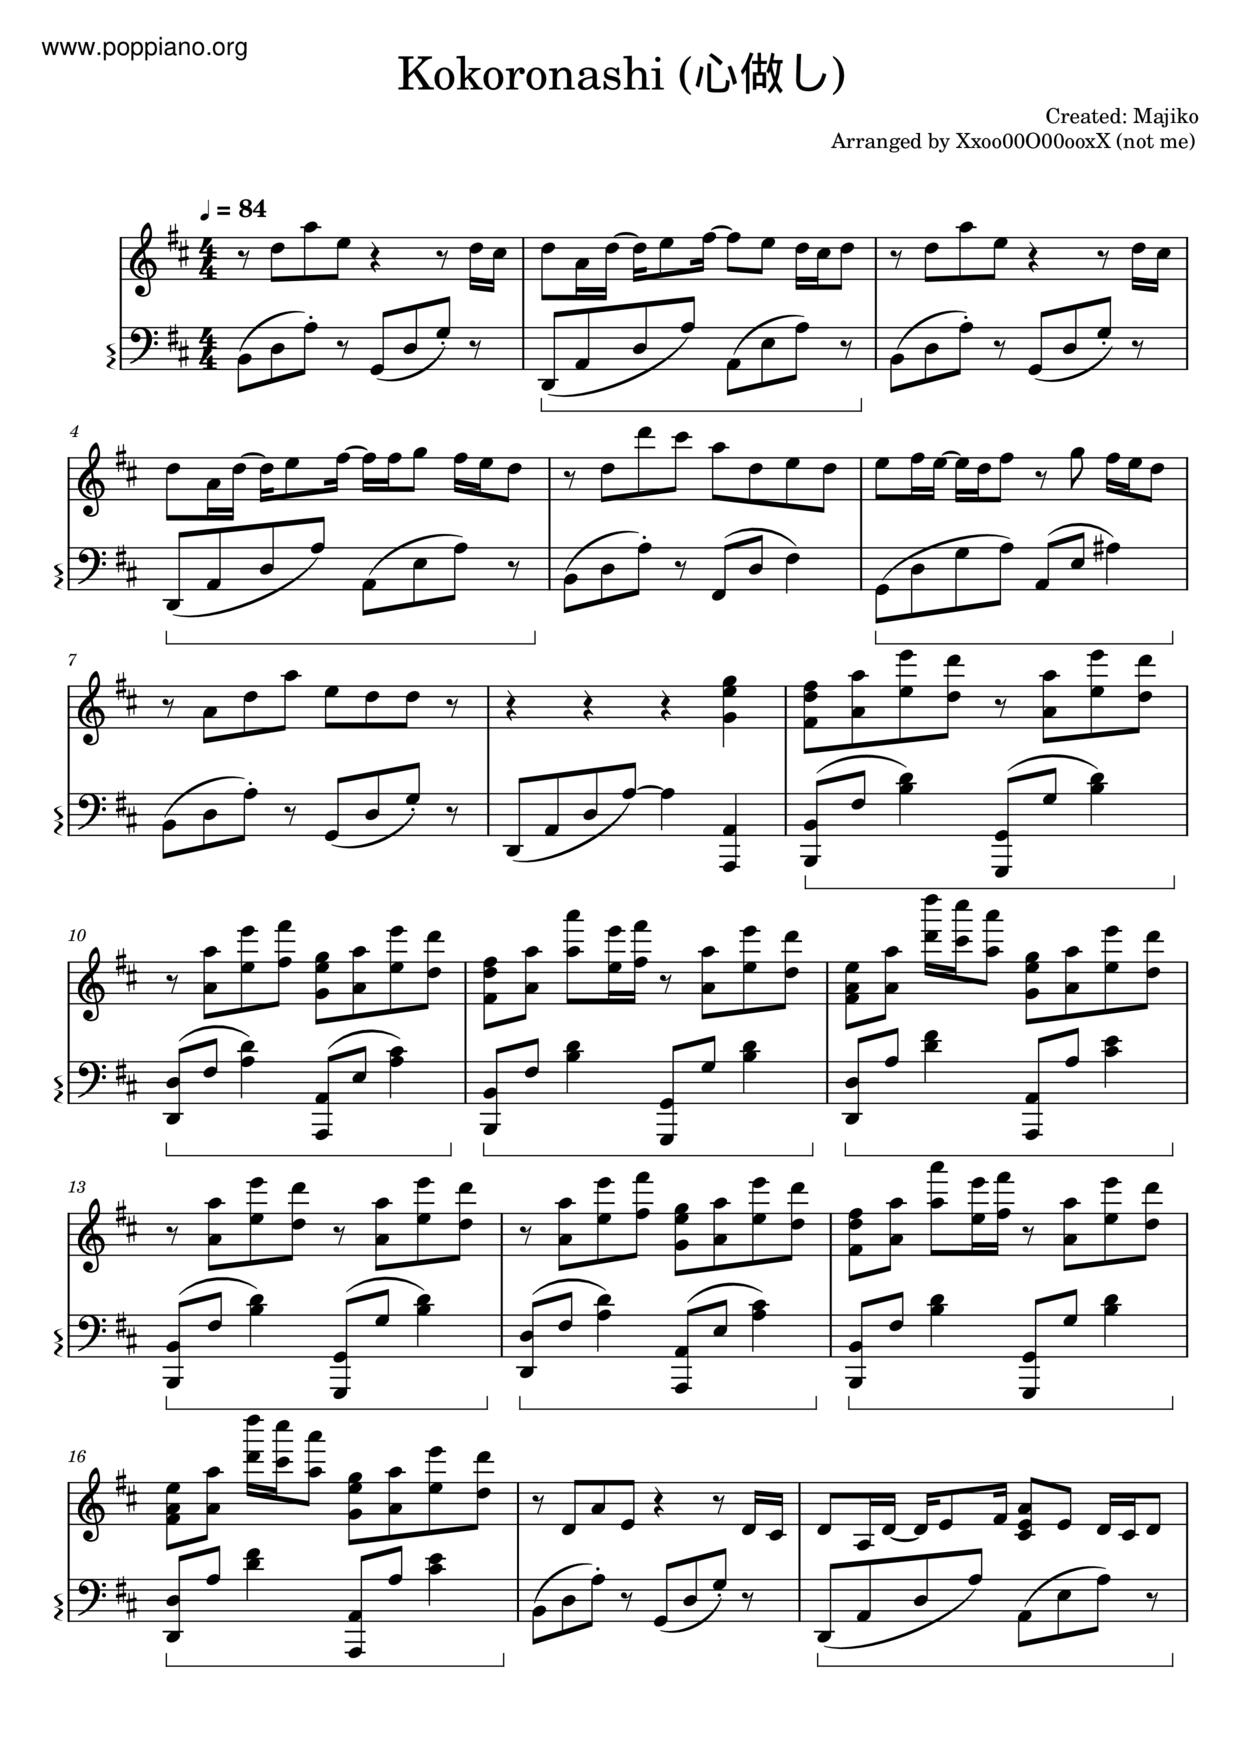 Kokoronashiピアノ譜